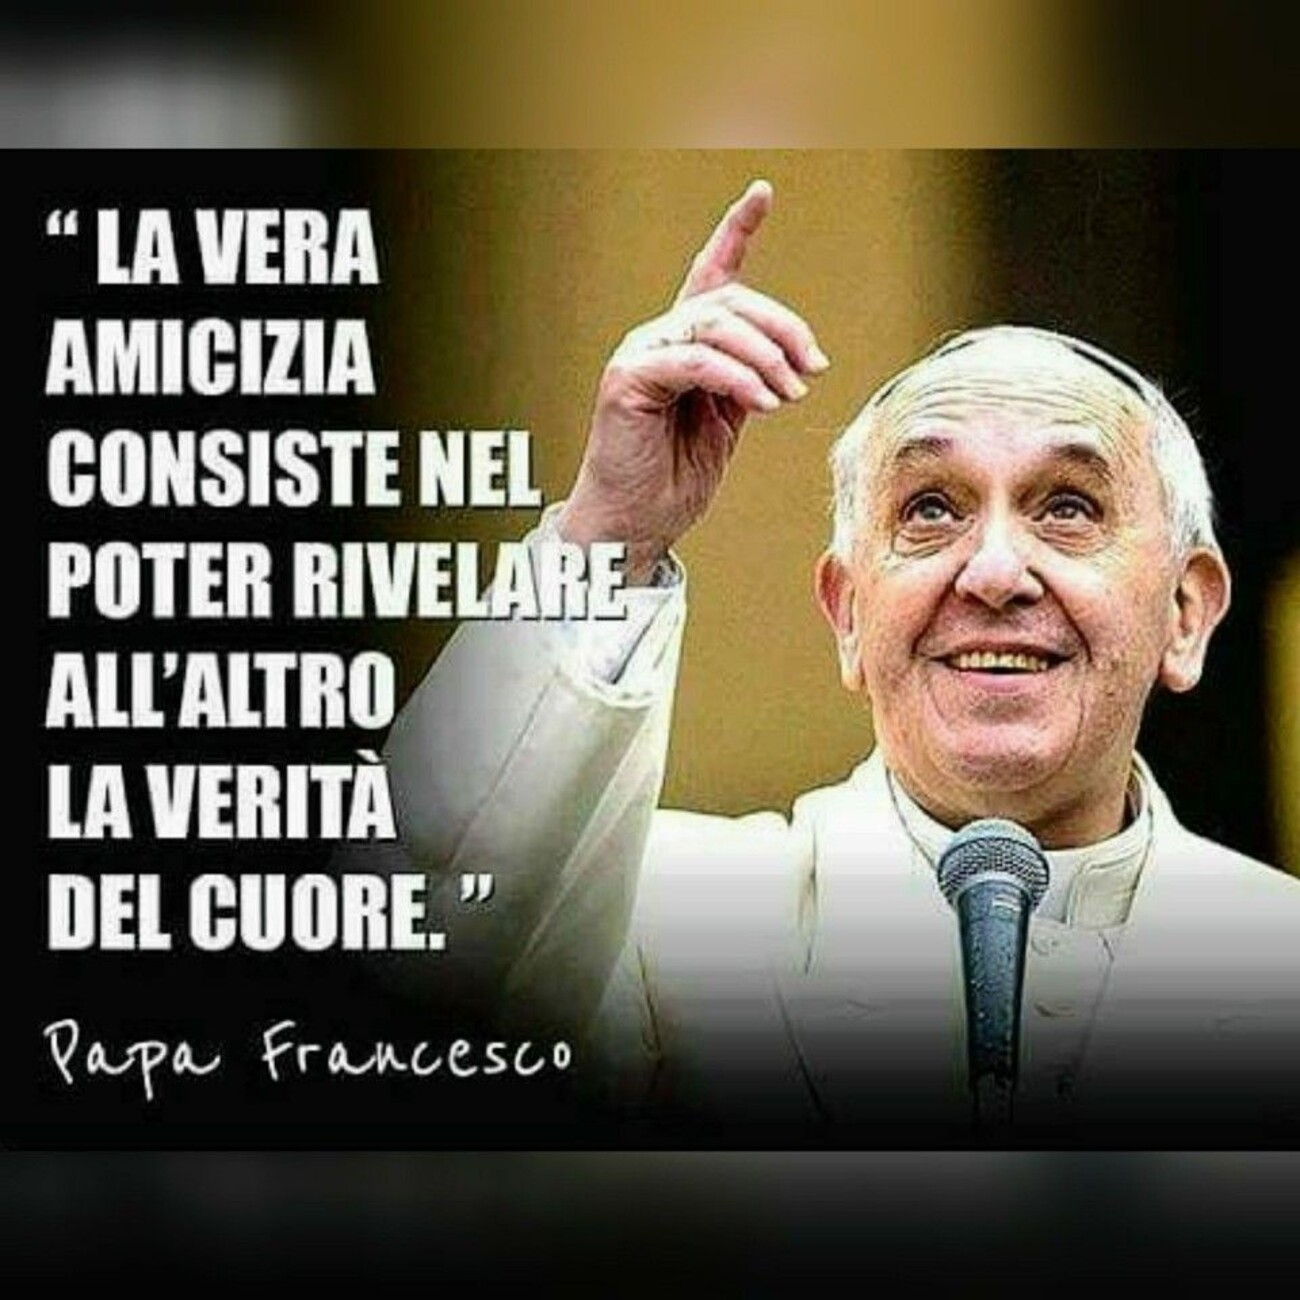 "La vera amicizia consiste nel poter rivelare all'altro la verità del cuore." Papa Francesco